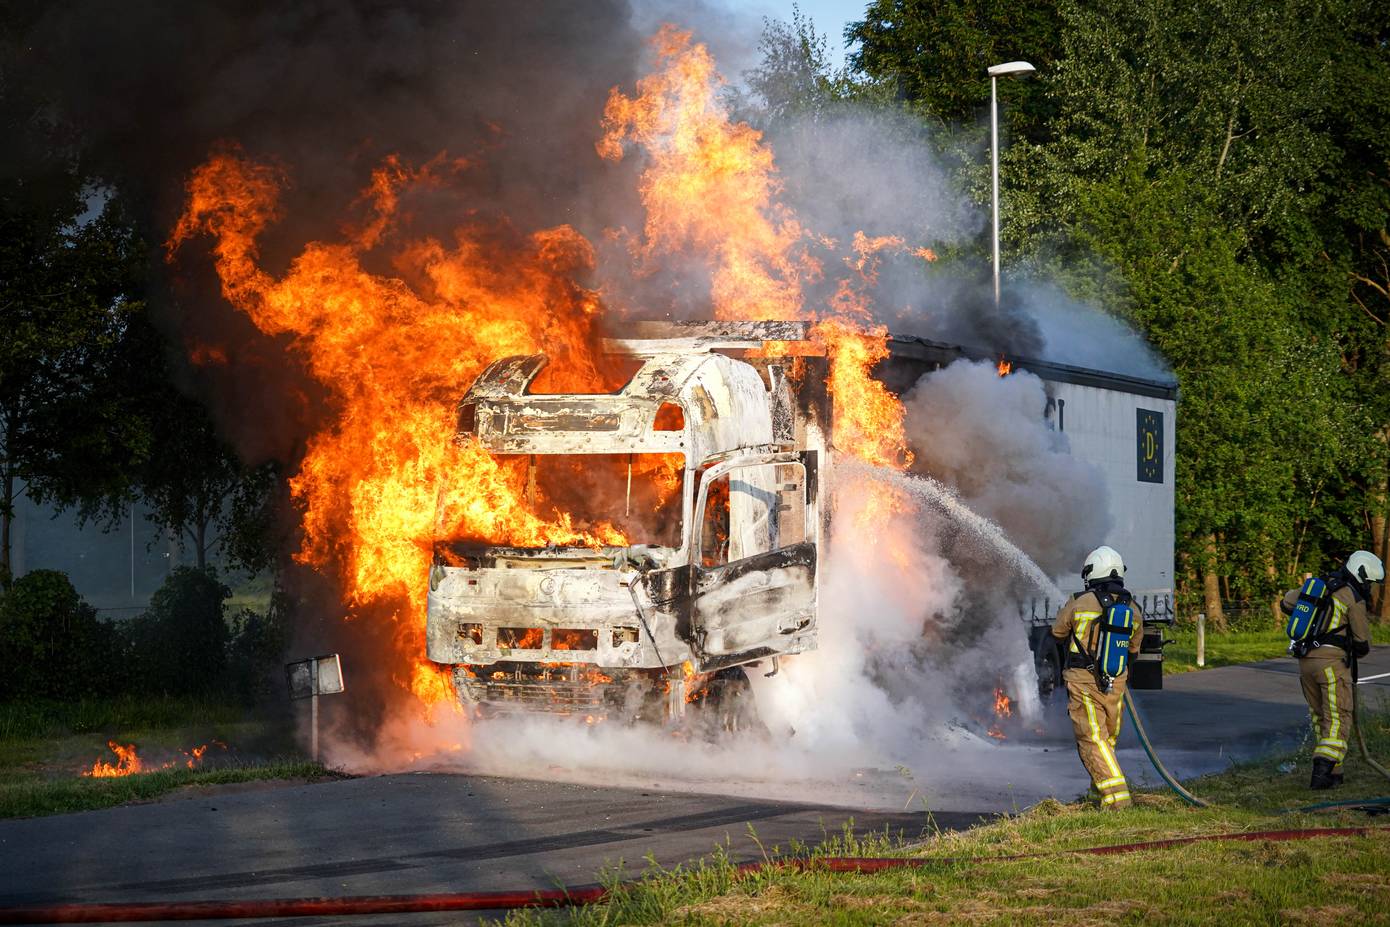 Vrachtwagen door felle uitslaande brand verwoest (Video)